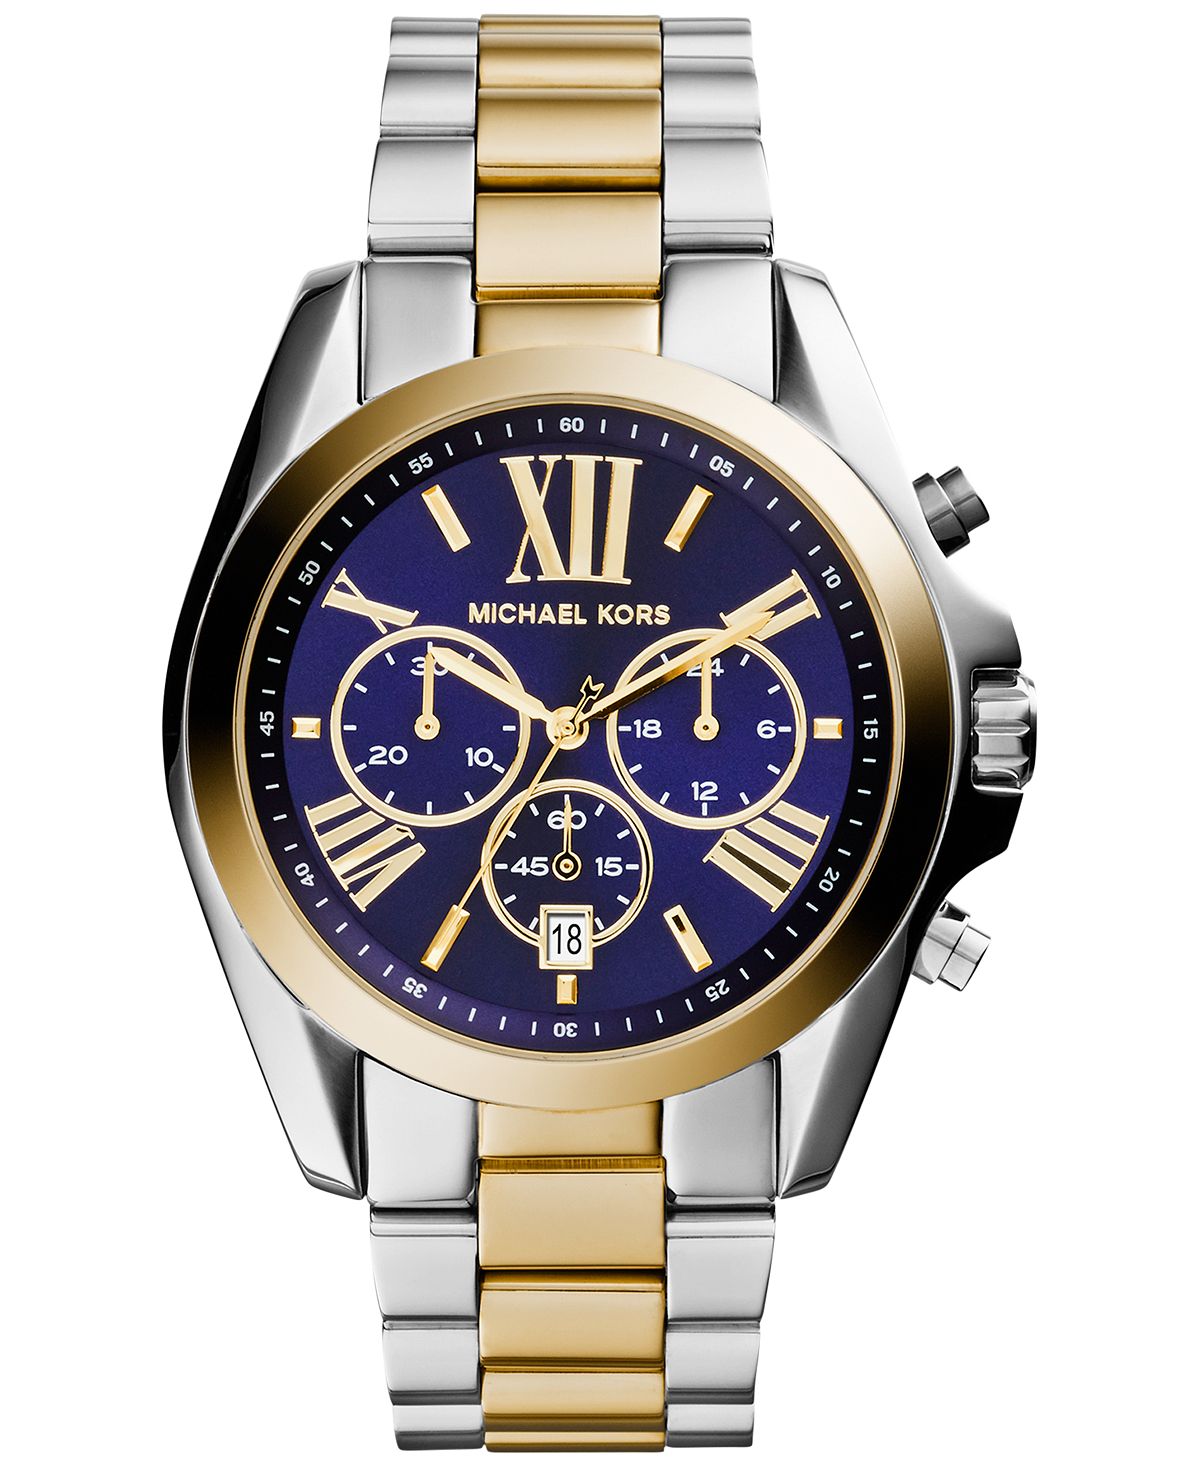 Женские часы-хронограф Bradshaw с двухцветным браслетом из нержавеющей стали, 43 мм, MK5976 Michael Kors